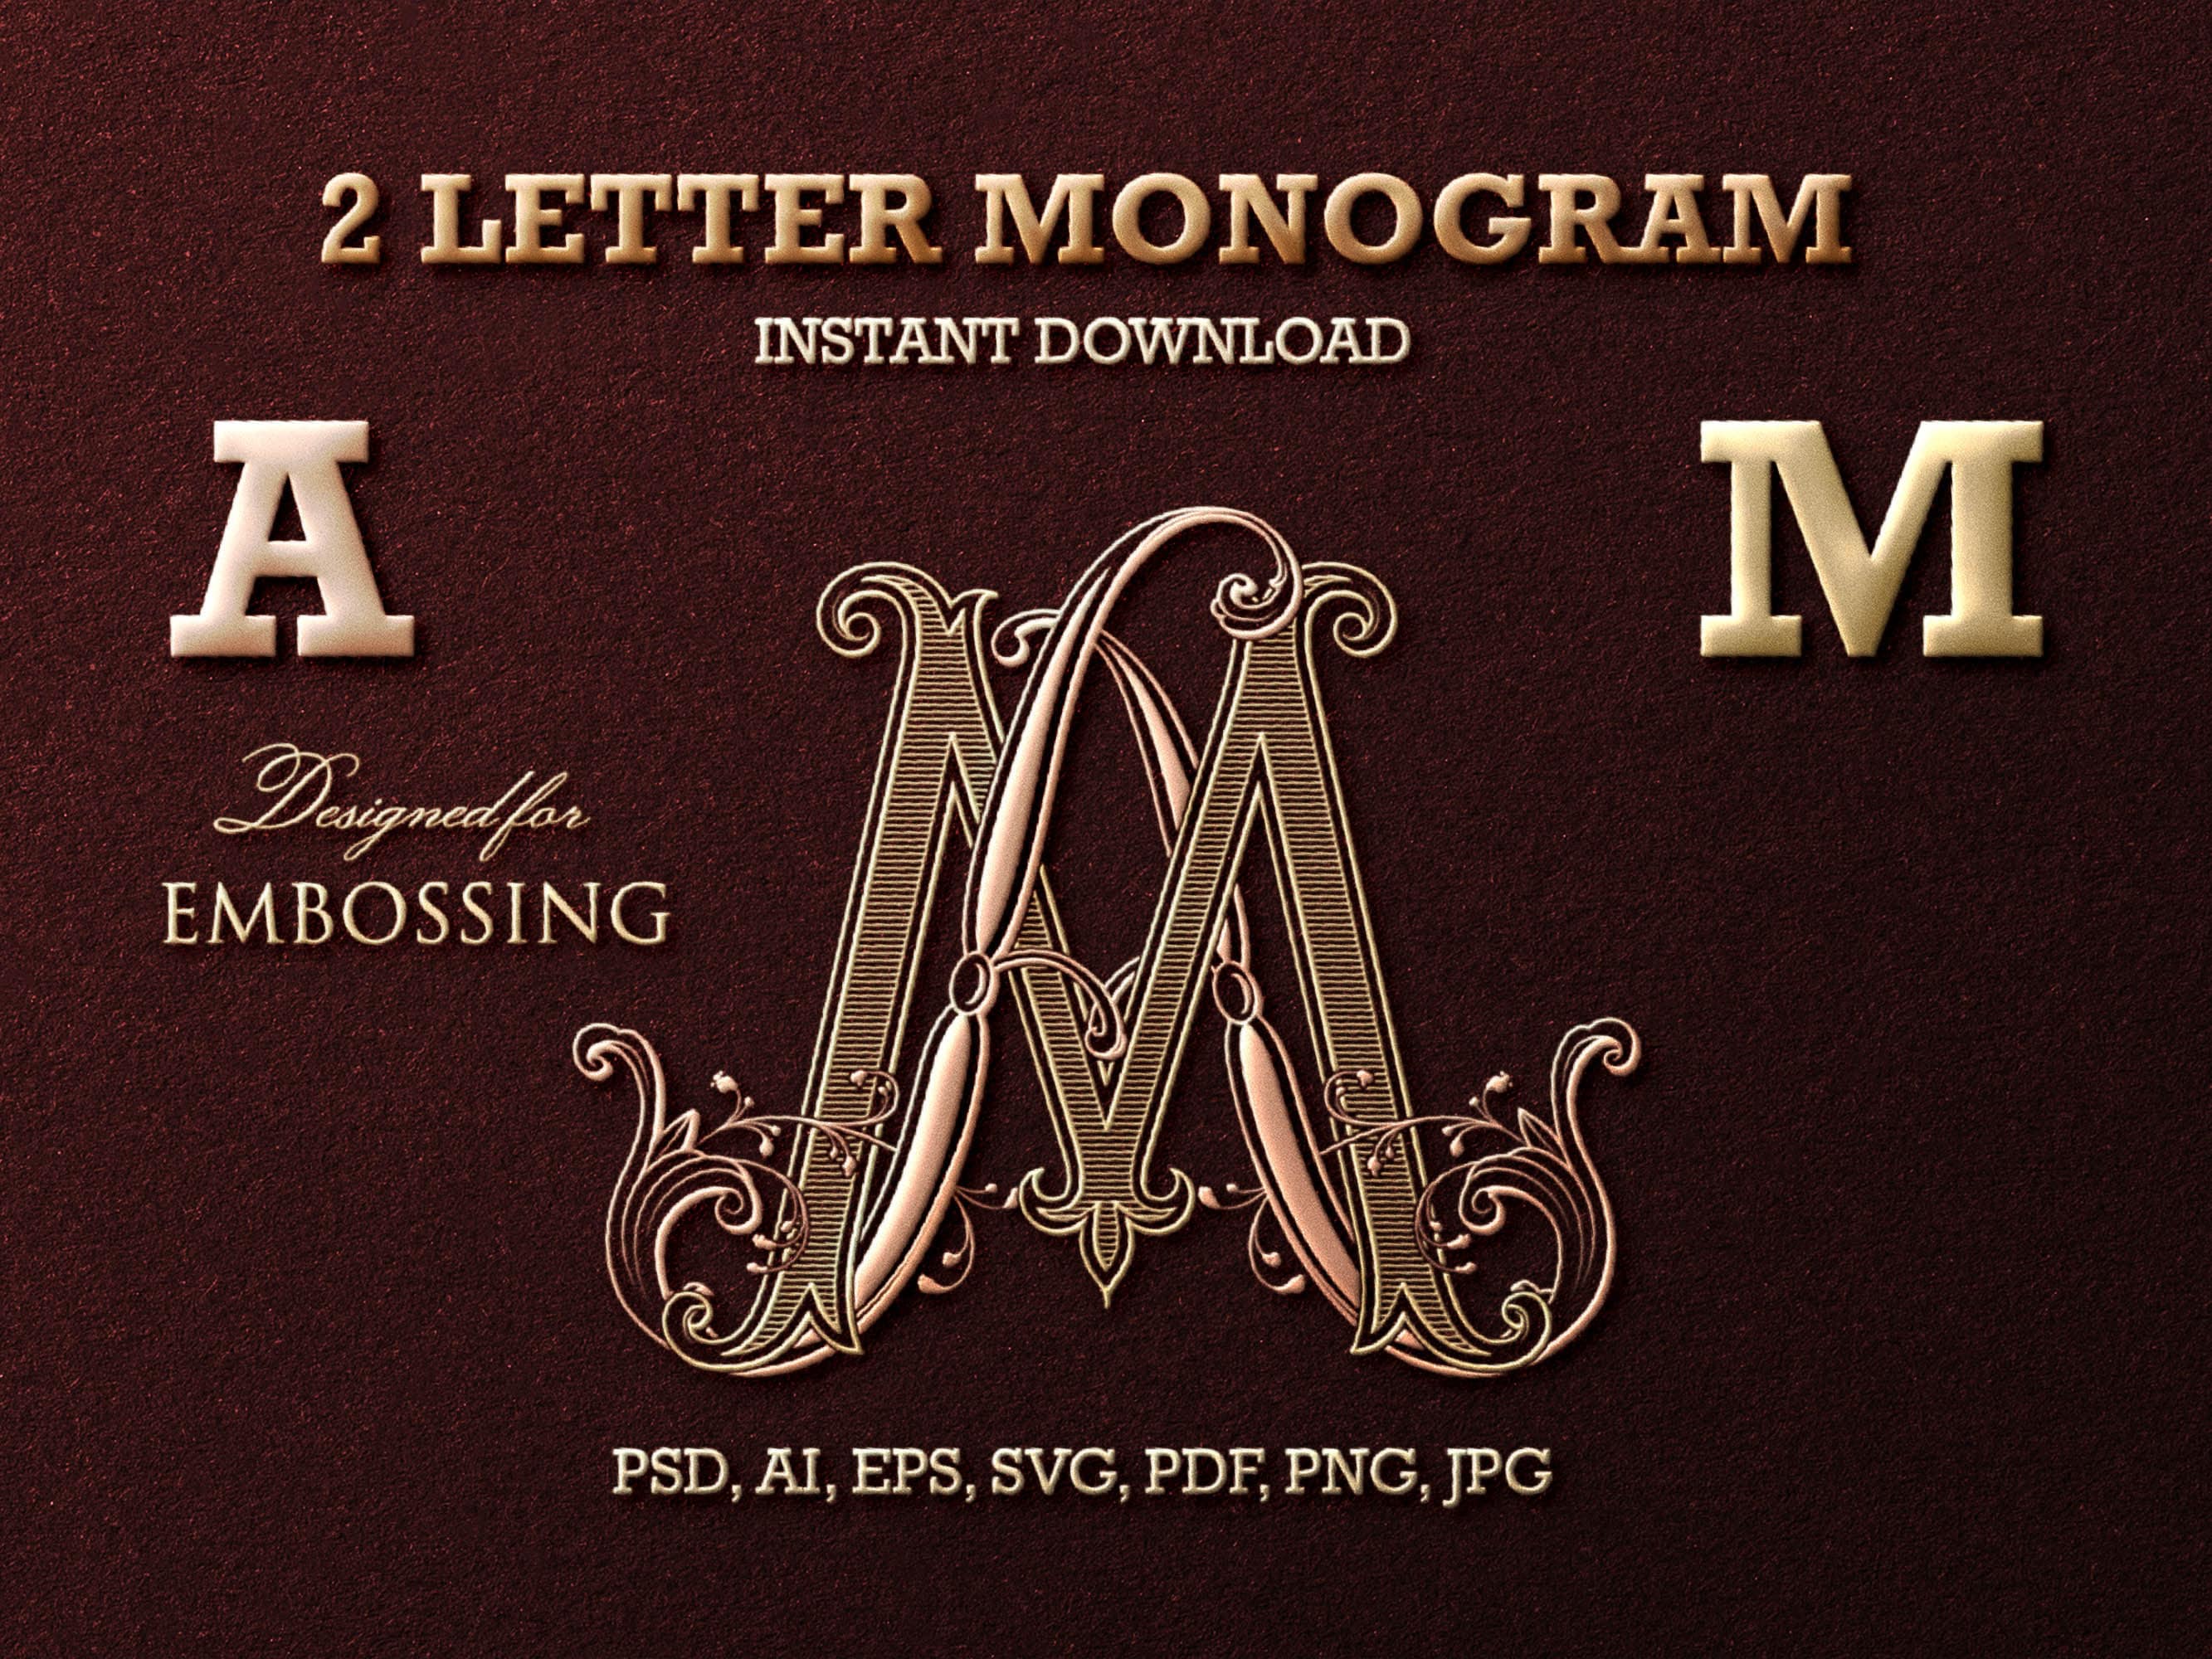 Gm Letter Logo Design PNG Transparent Images Free Download, Vector Files